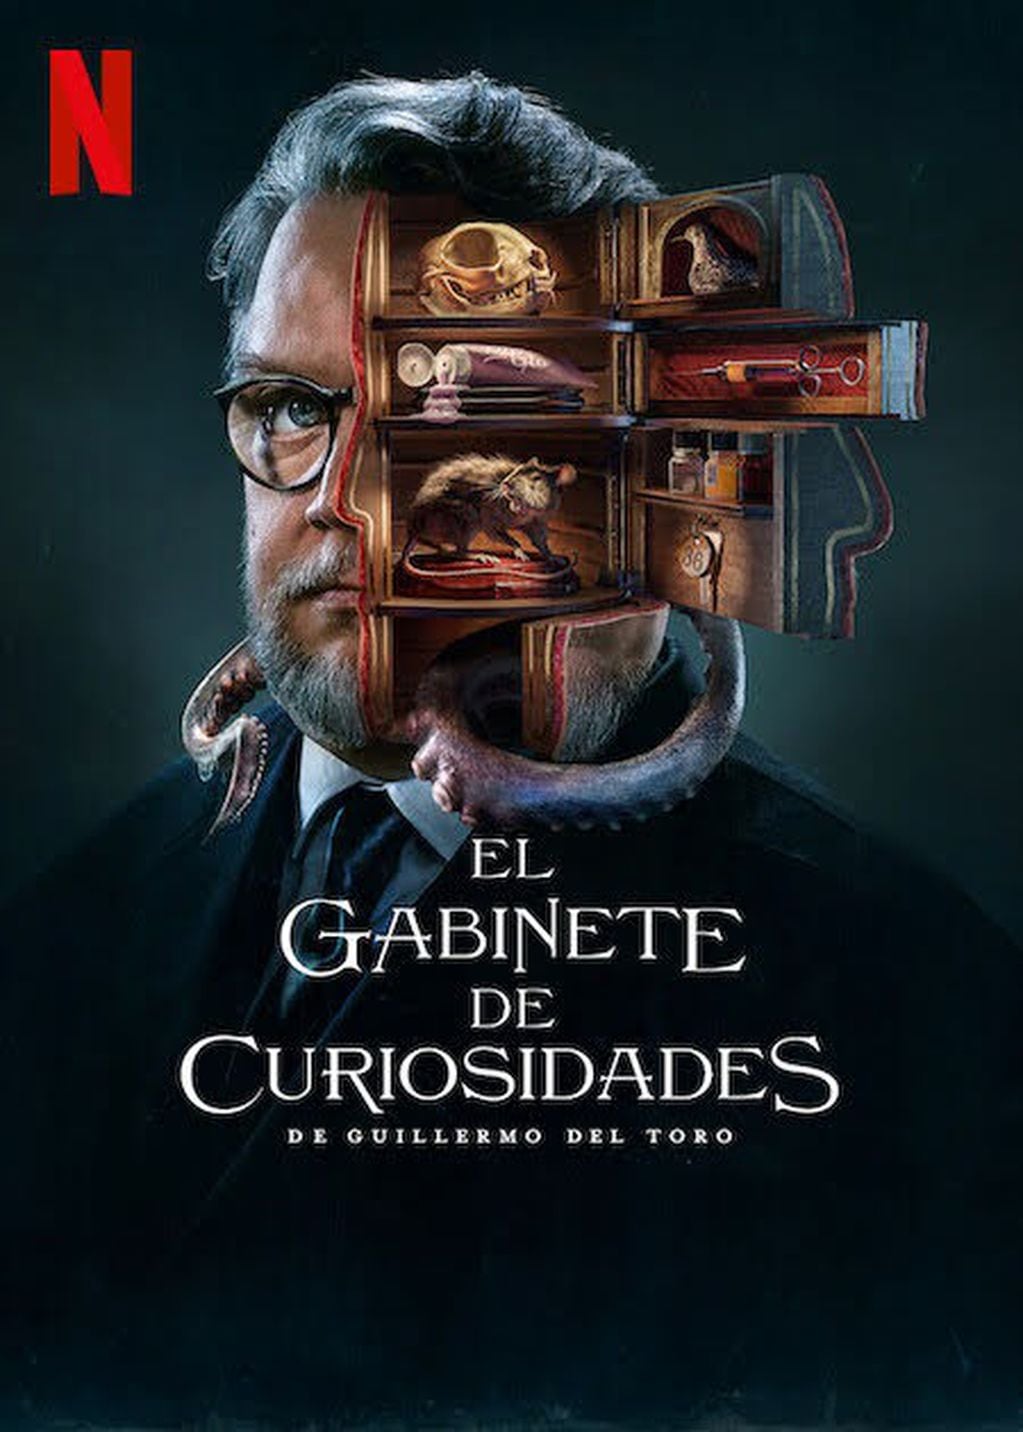 El Gabinete de Curiosidades se estrenó el 25 de octubre de 2022